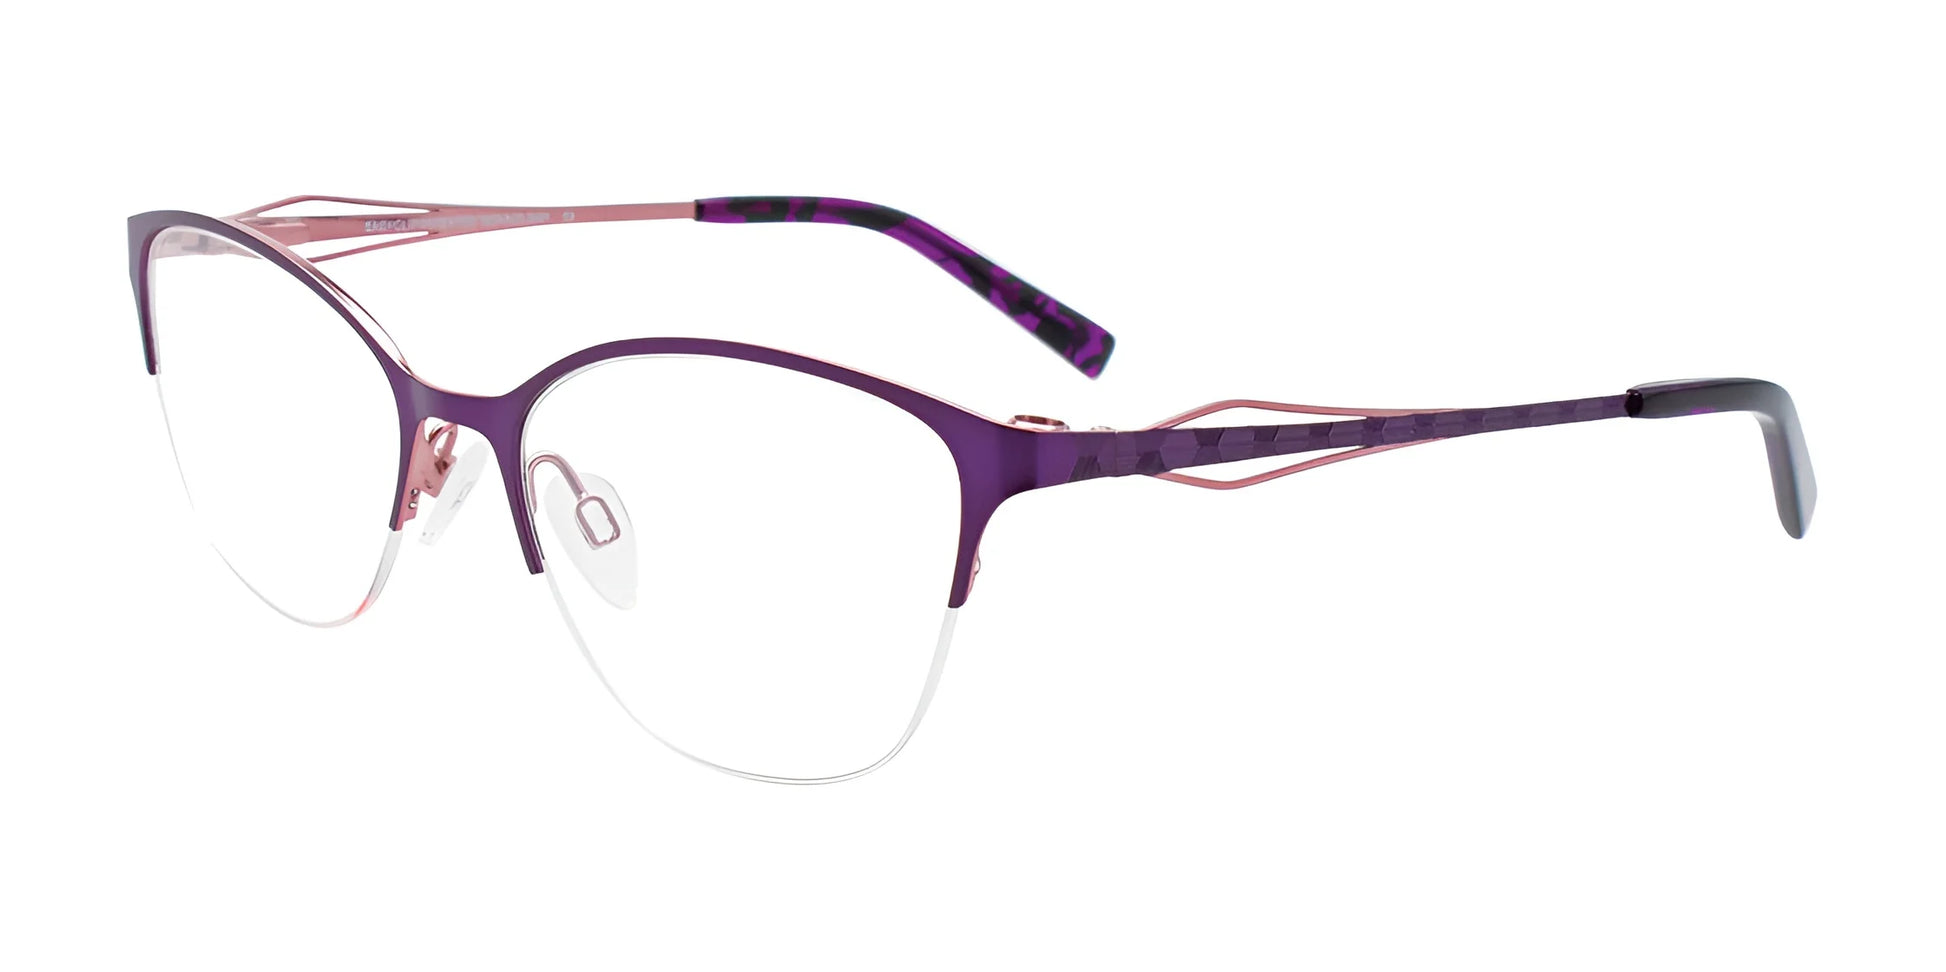 EasyClip EC521 Eyeglasses Shiny Violet & Light Pink